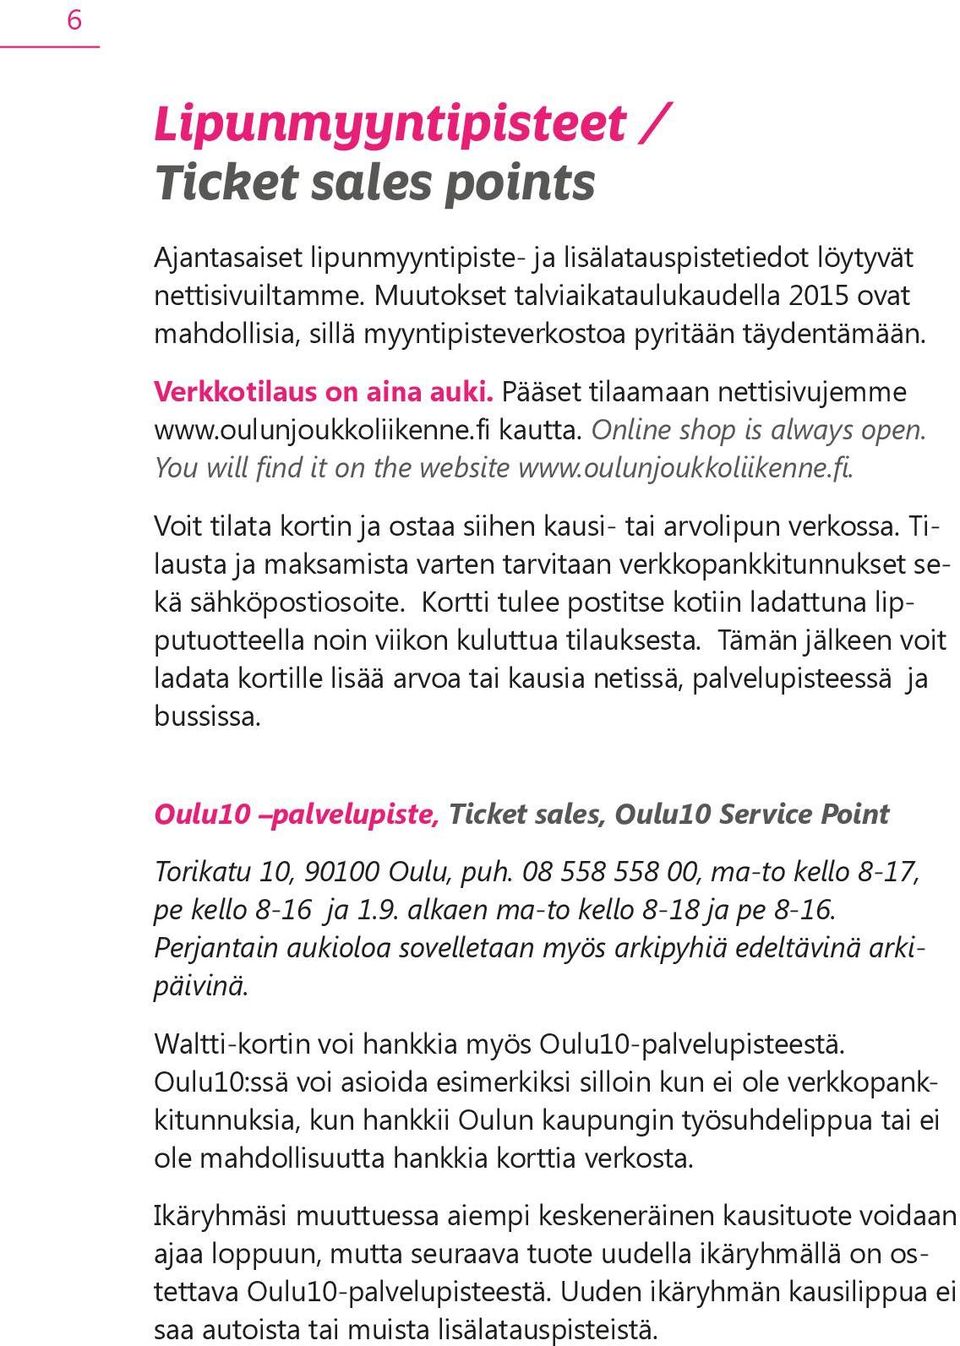 Online shop is always open. You will find it on the website www.oulunjoukkoliikenne.fi. Voit tilata kortin ja ostaa siihen kausi- tai arvolipun verkossa.